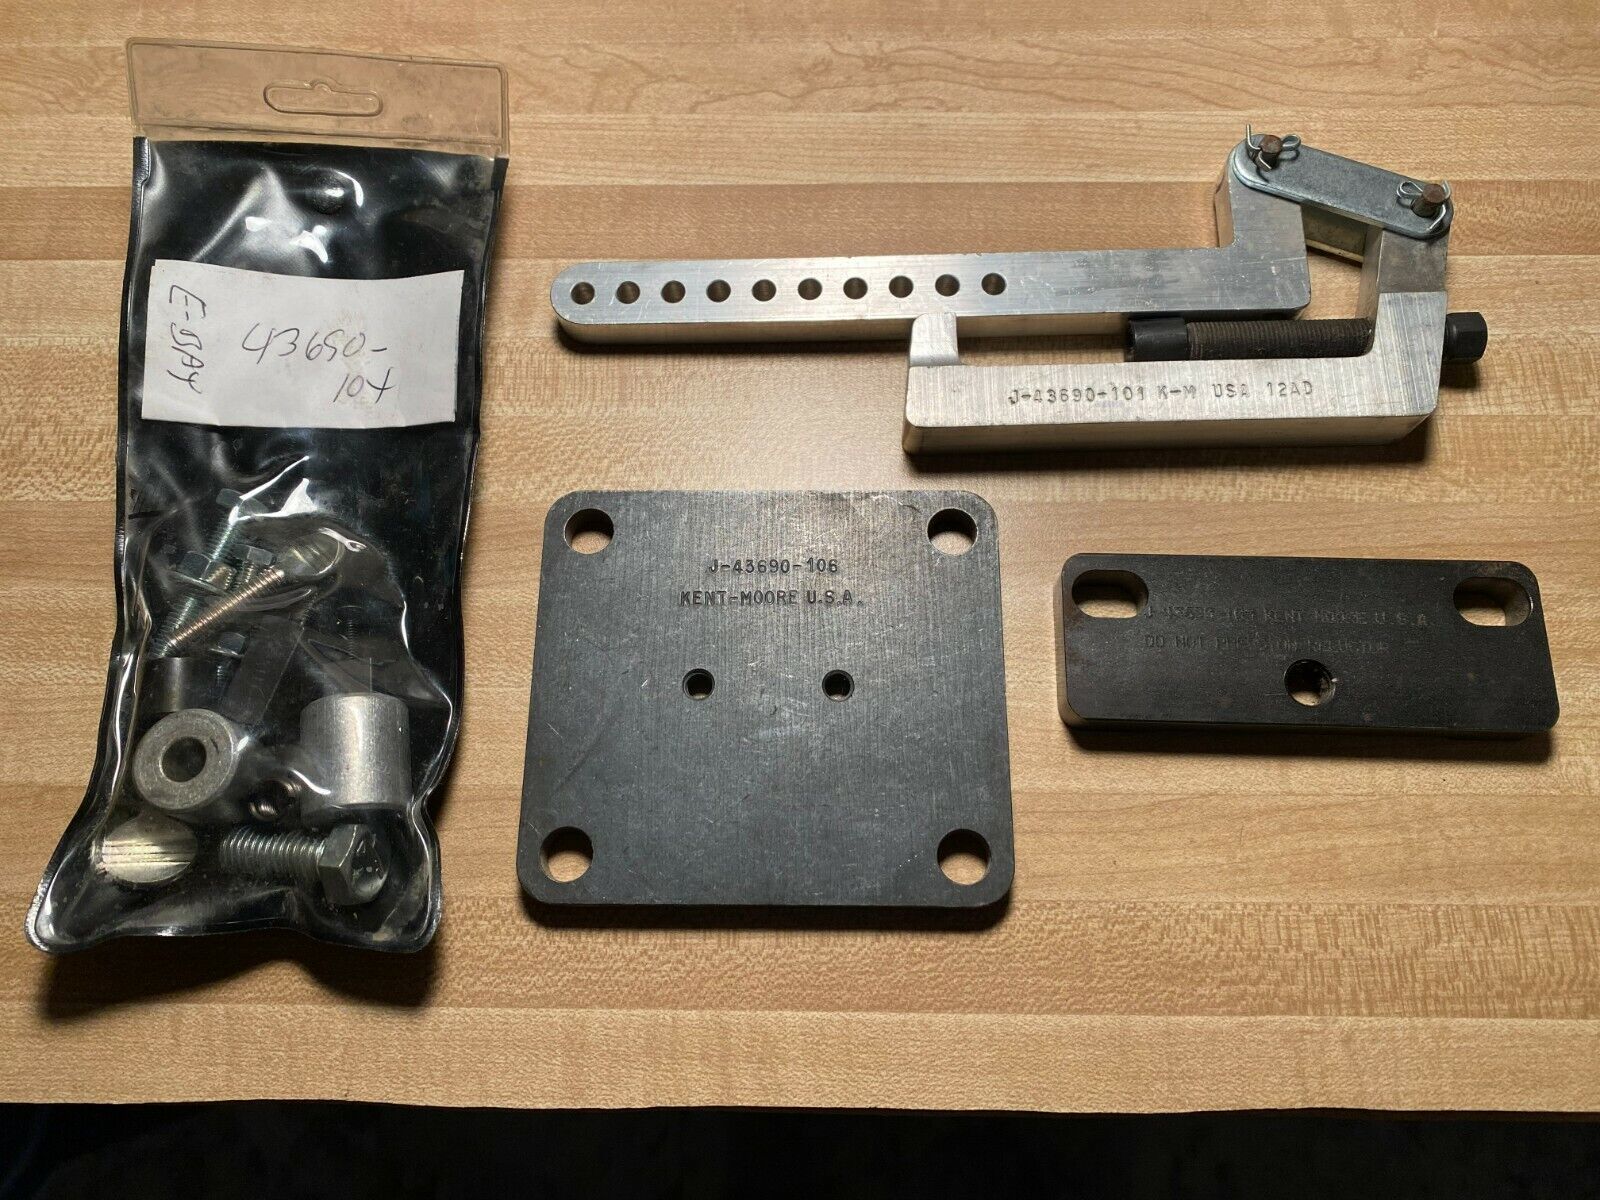 Kent-Moore J-43690-101, 104, 105 & 106 Bearing Check Tools